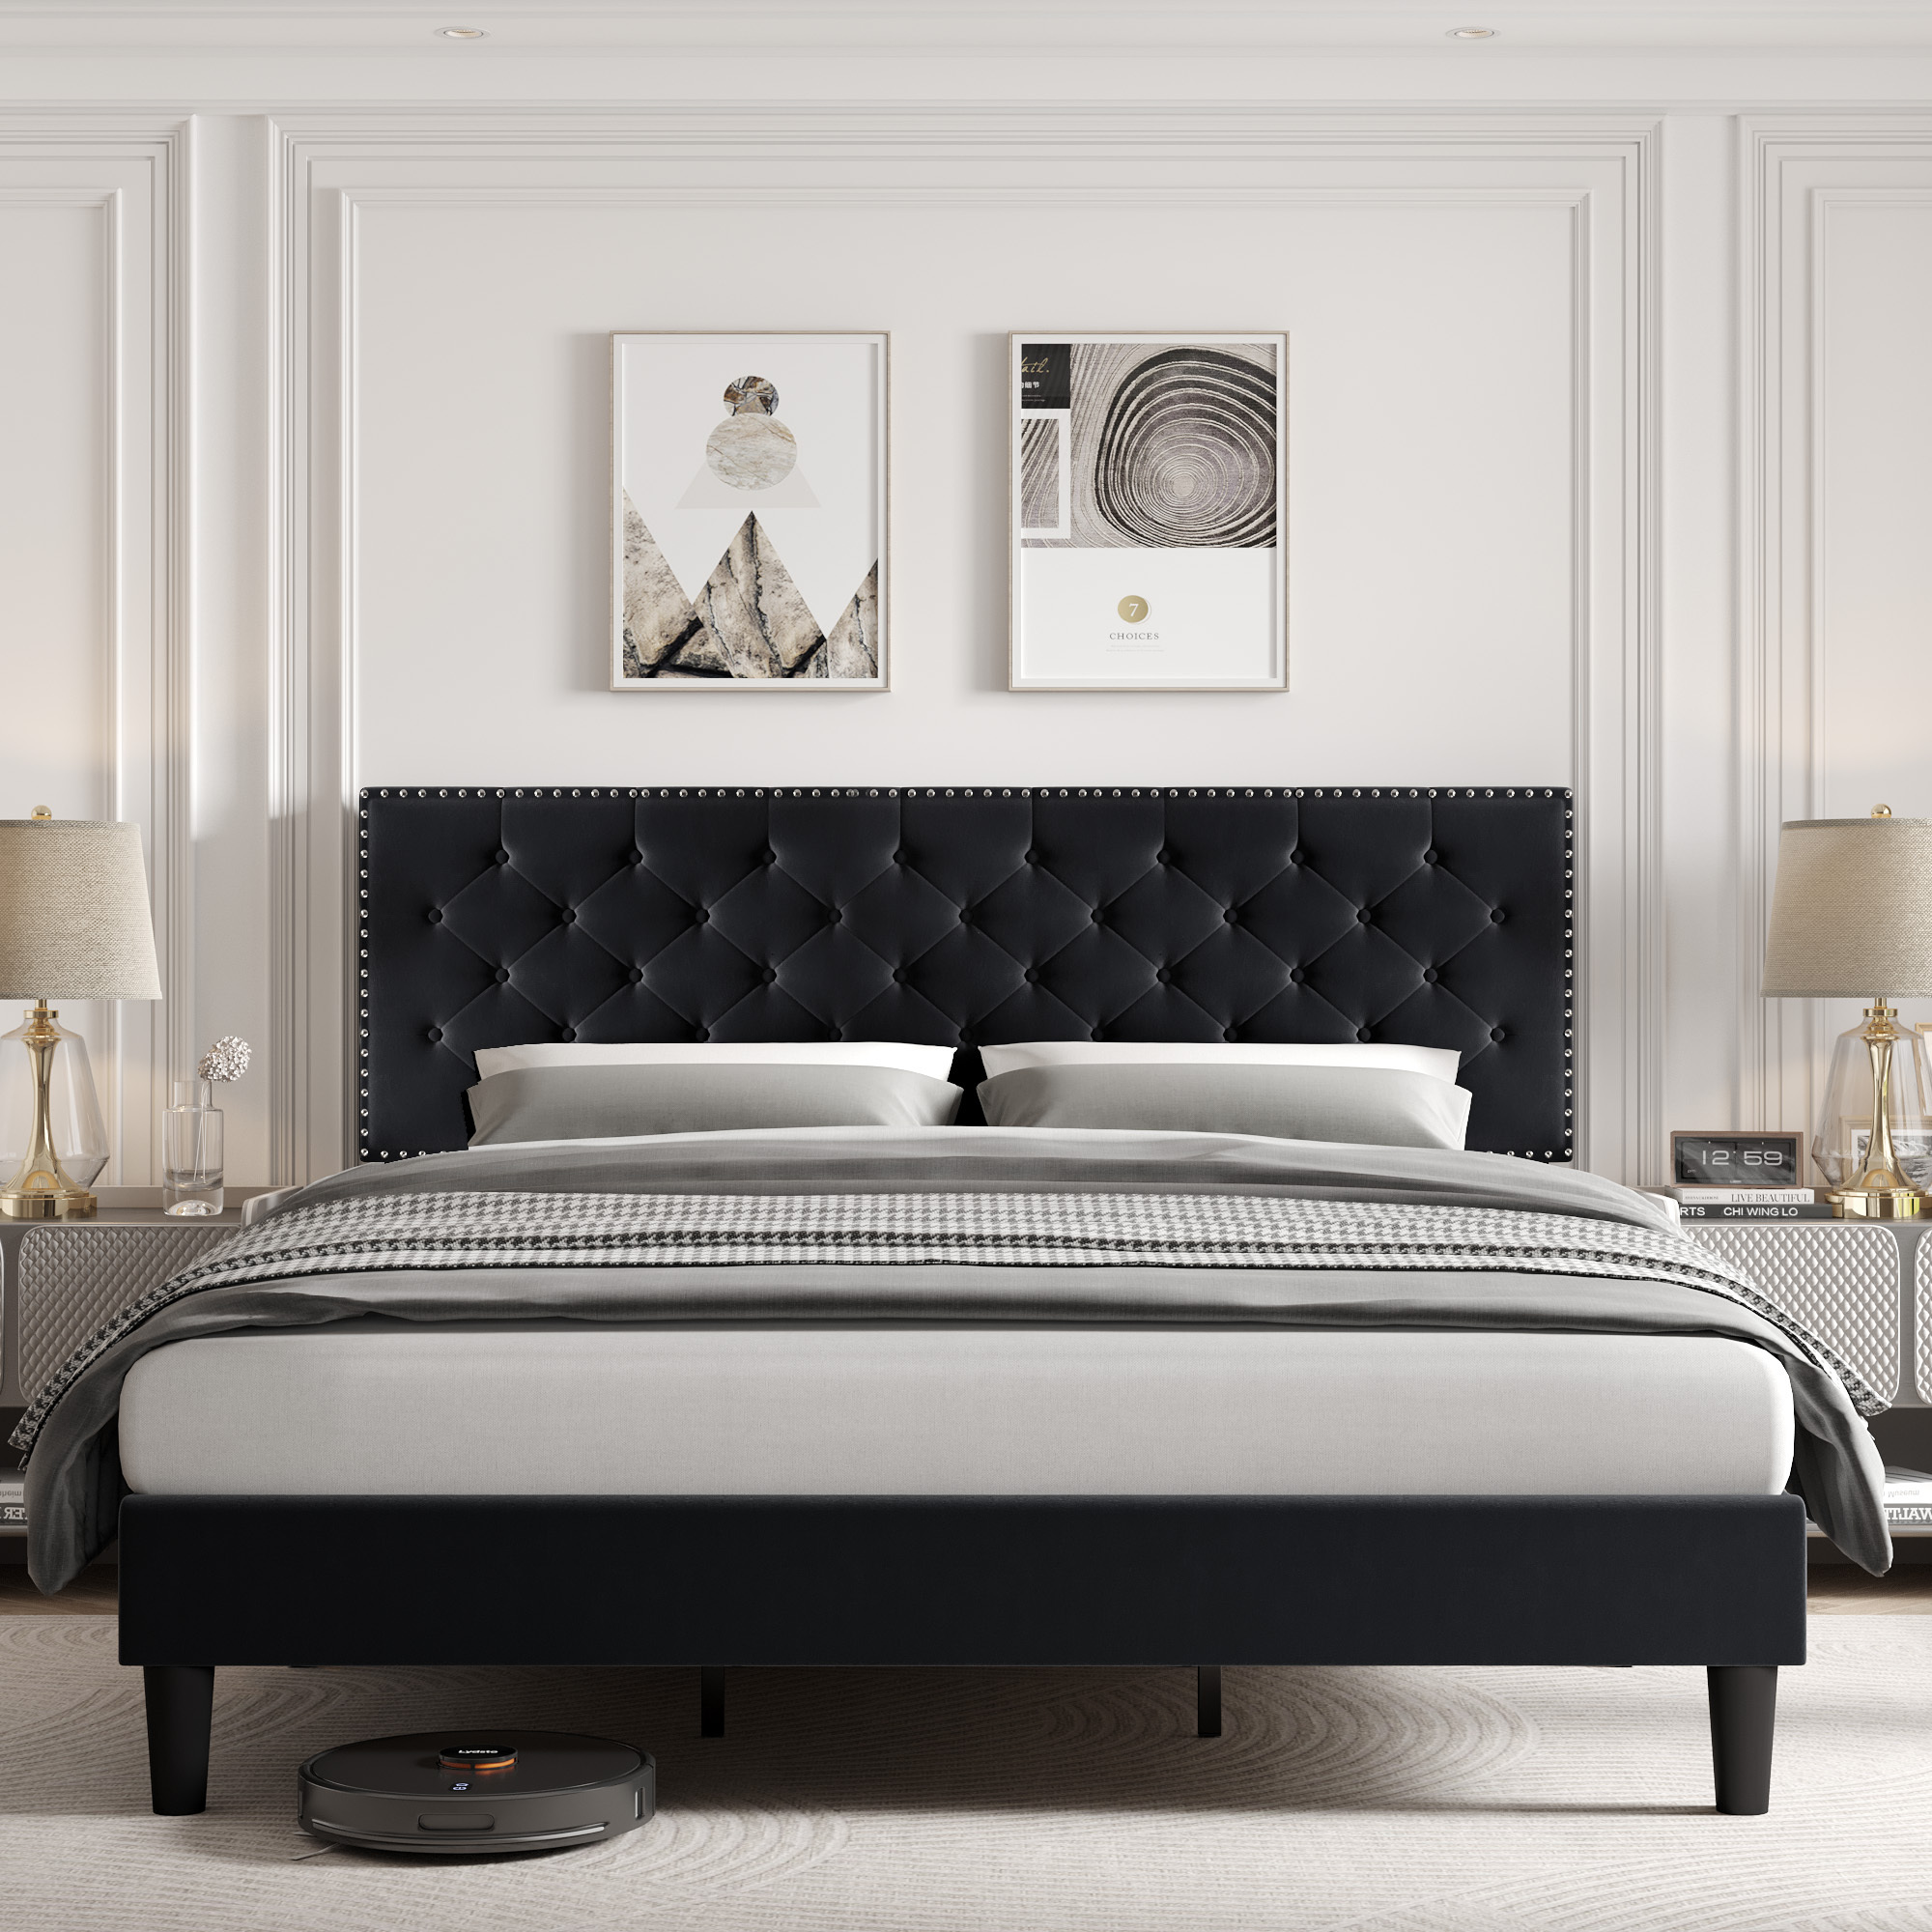 Homfa King Size Bed, Modern Upholstered Platform Bed Frame with Adjustable Headboard for Bedroom, Black - image 1 of 7